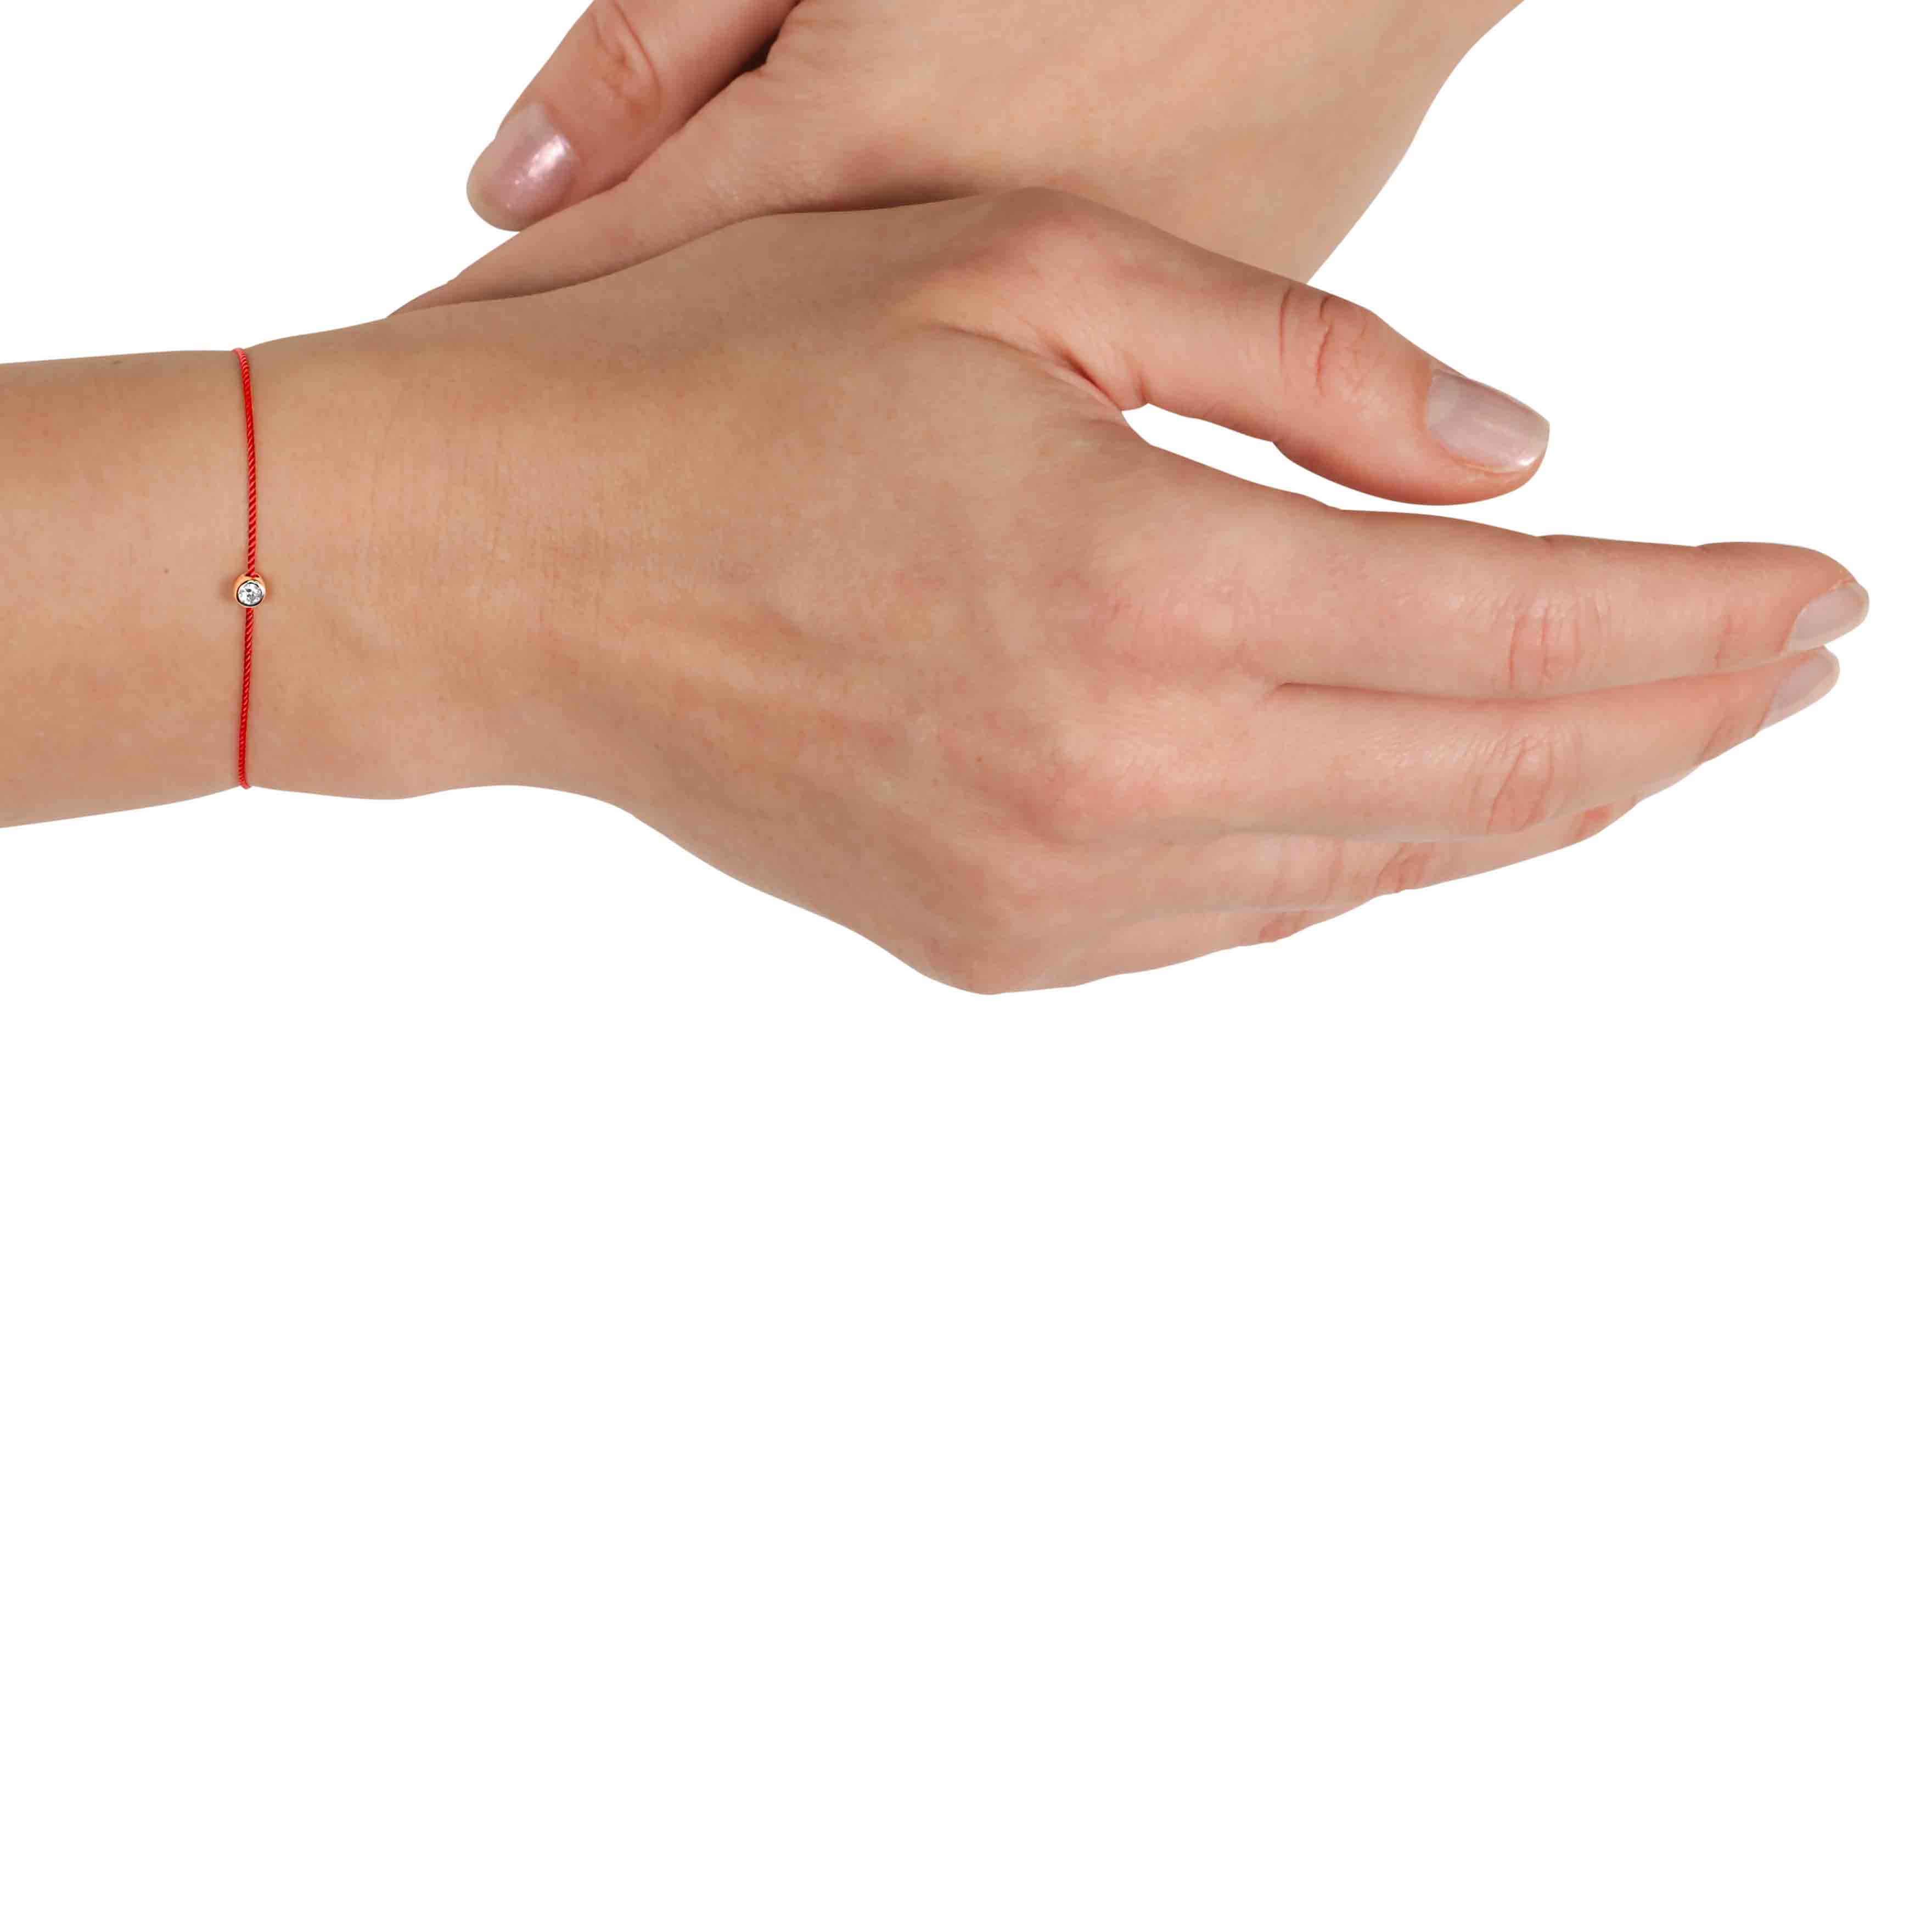 5 DIY Red String Bracelets | Lucky Charm Bracelets | SAYZ Ideas No. 50 |  Paracord bracelet patterns, String bracelet patterns, Red string bracelet